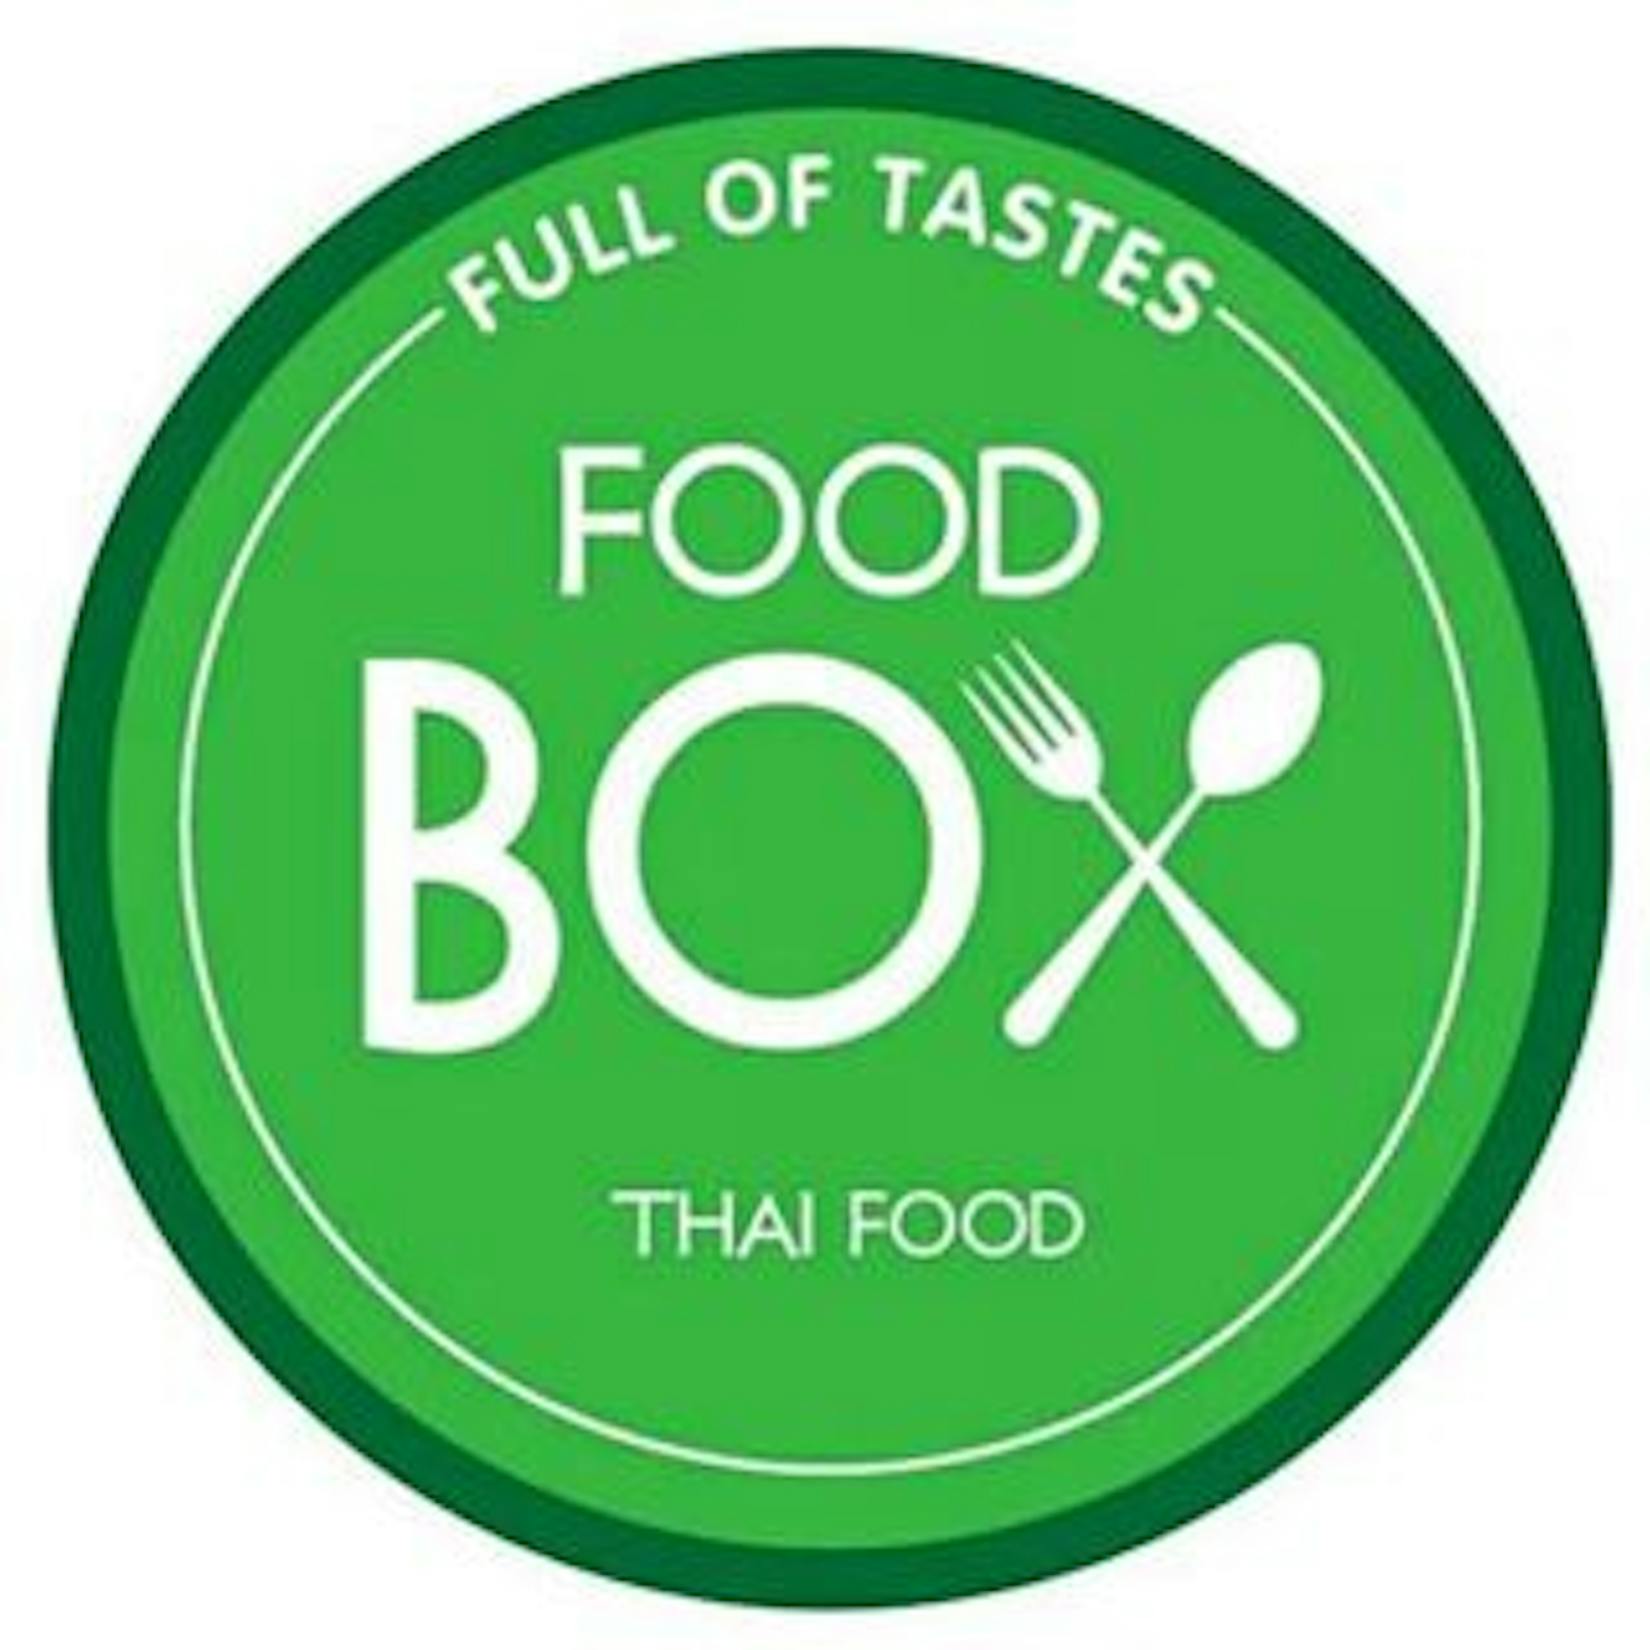 Food Box Thai food | yathar